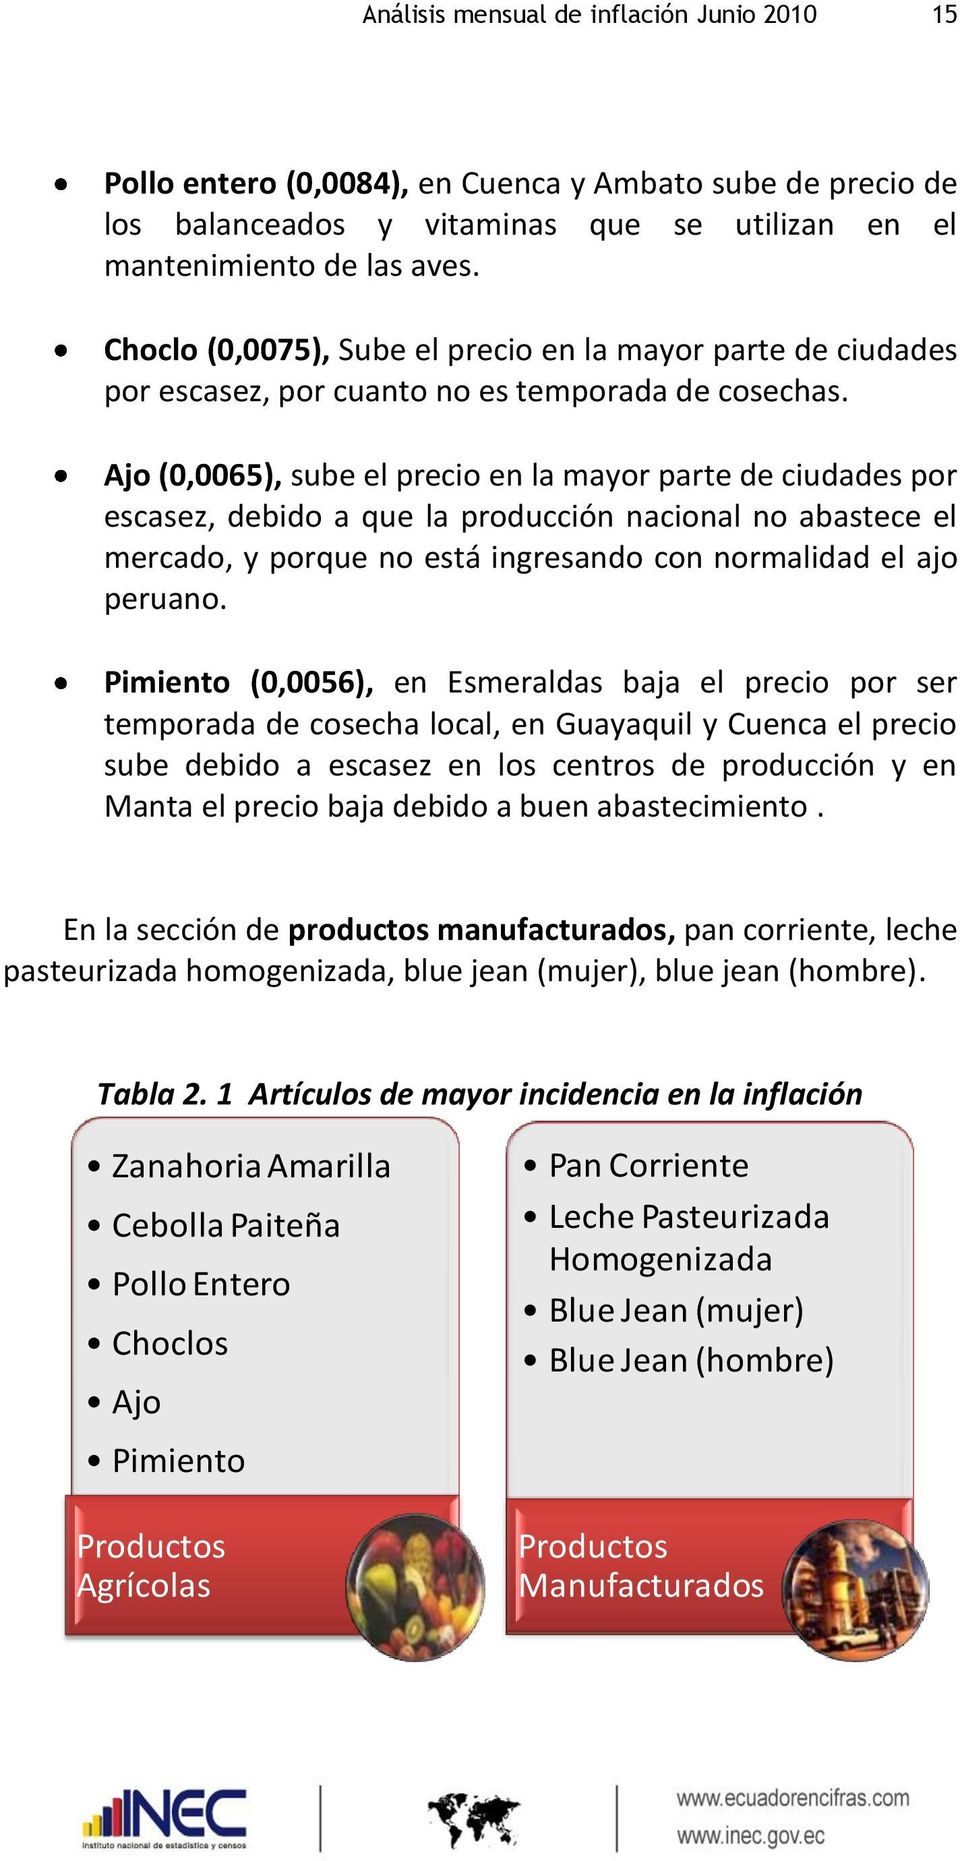 Ajo (0,0065), sube el precio en la mayor parte de ciudades por escasez, debido a que la producción nacional no abastece el mercado, y porque no está ingresando con normalidad el ajo peruano.